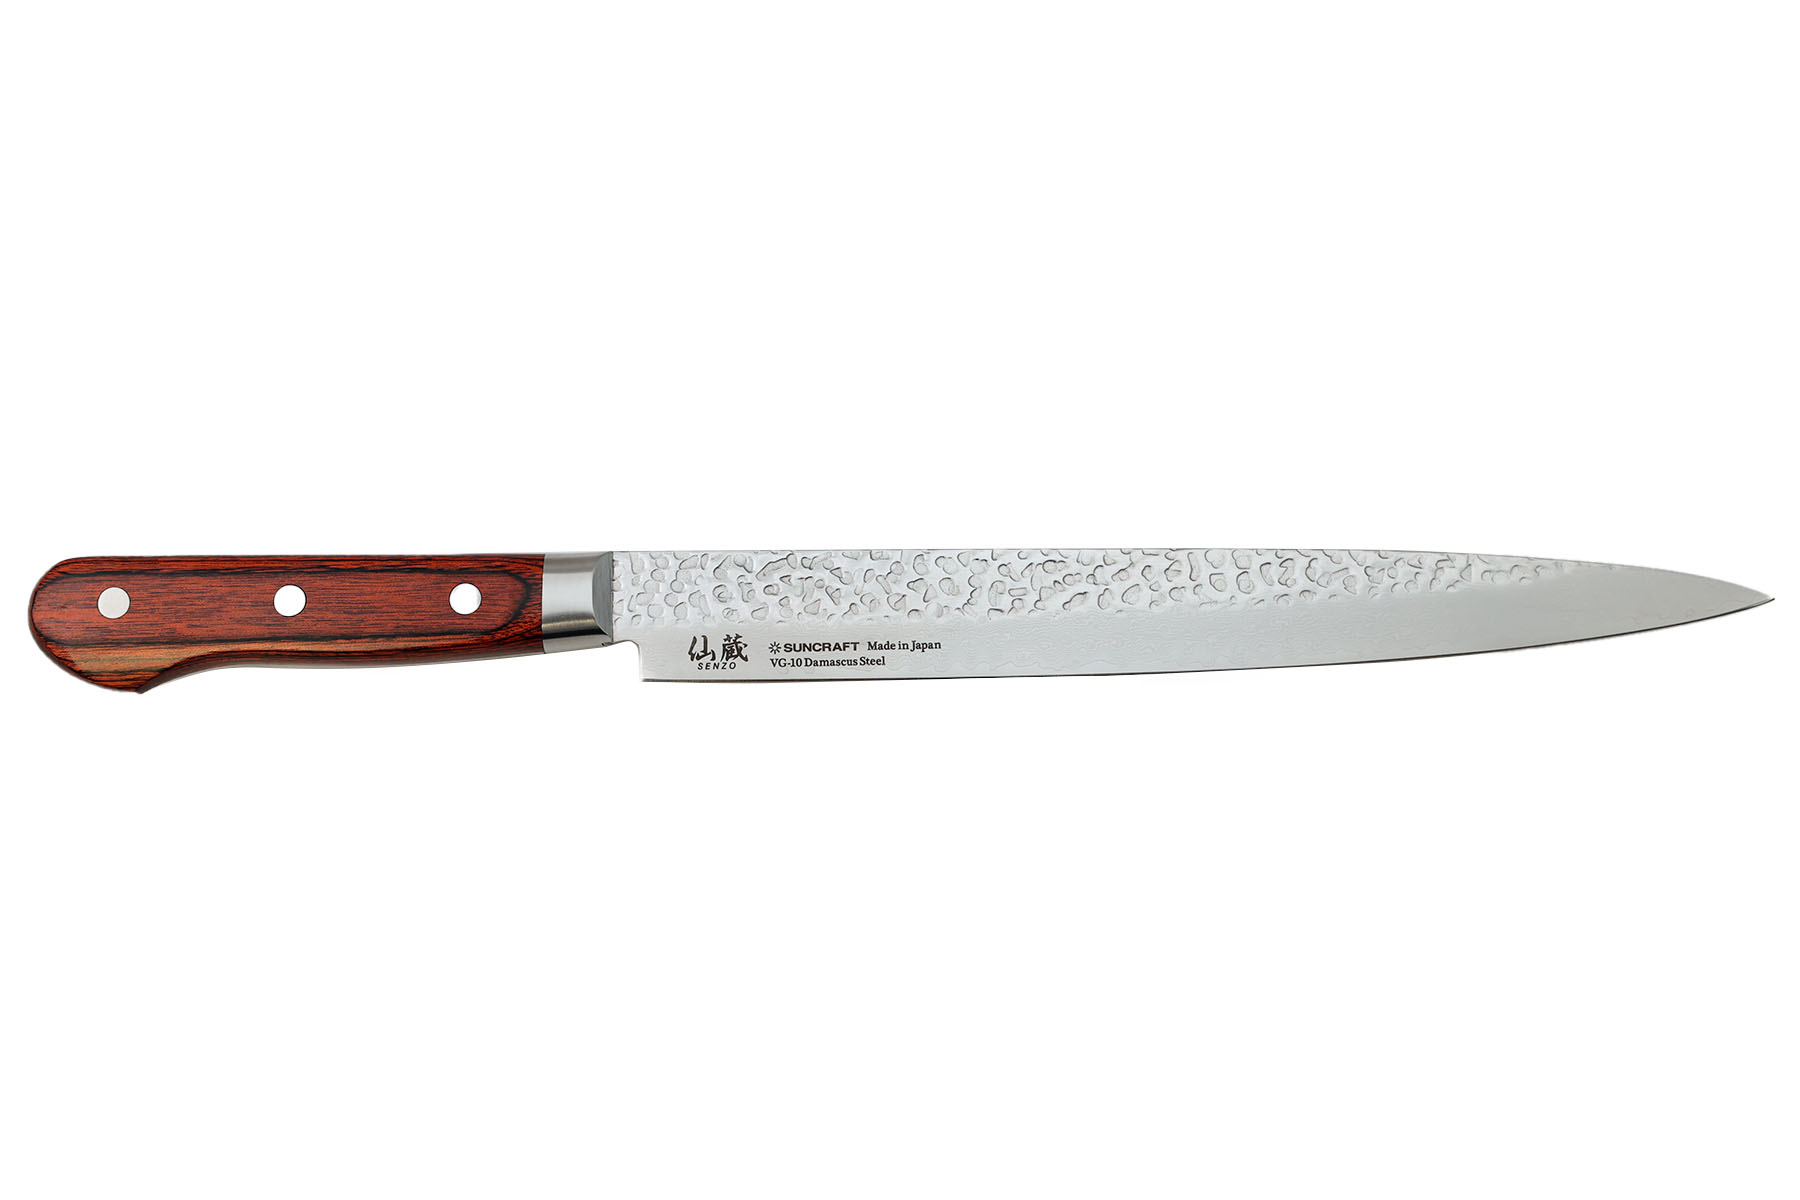 Couteau japonais Suncraft Full Tang - Couteau à trancher 24 cm